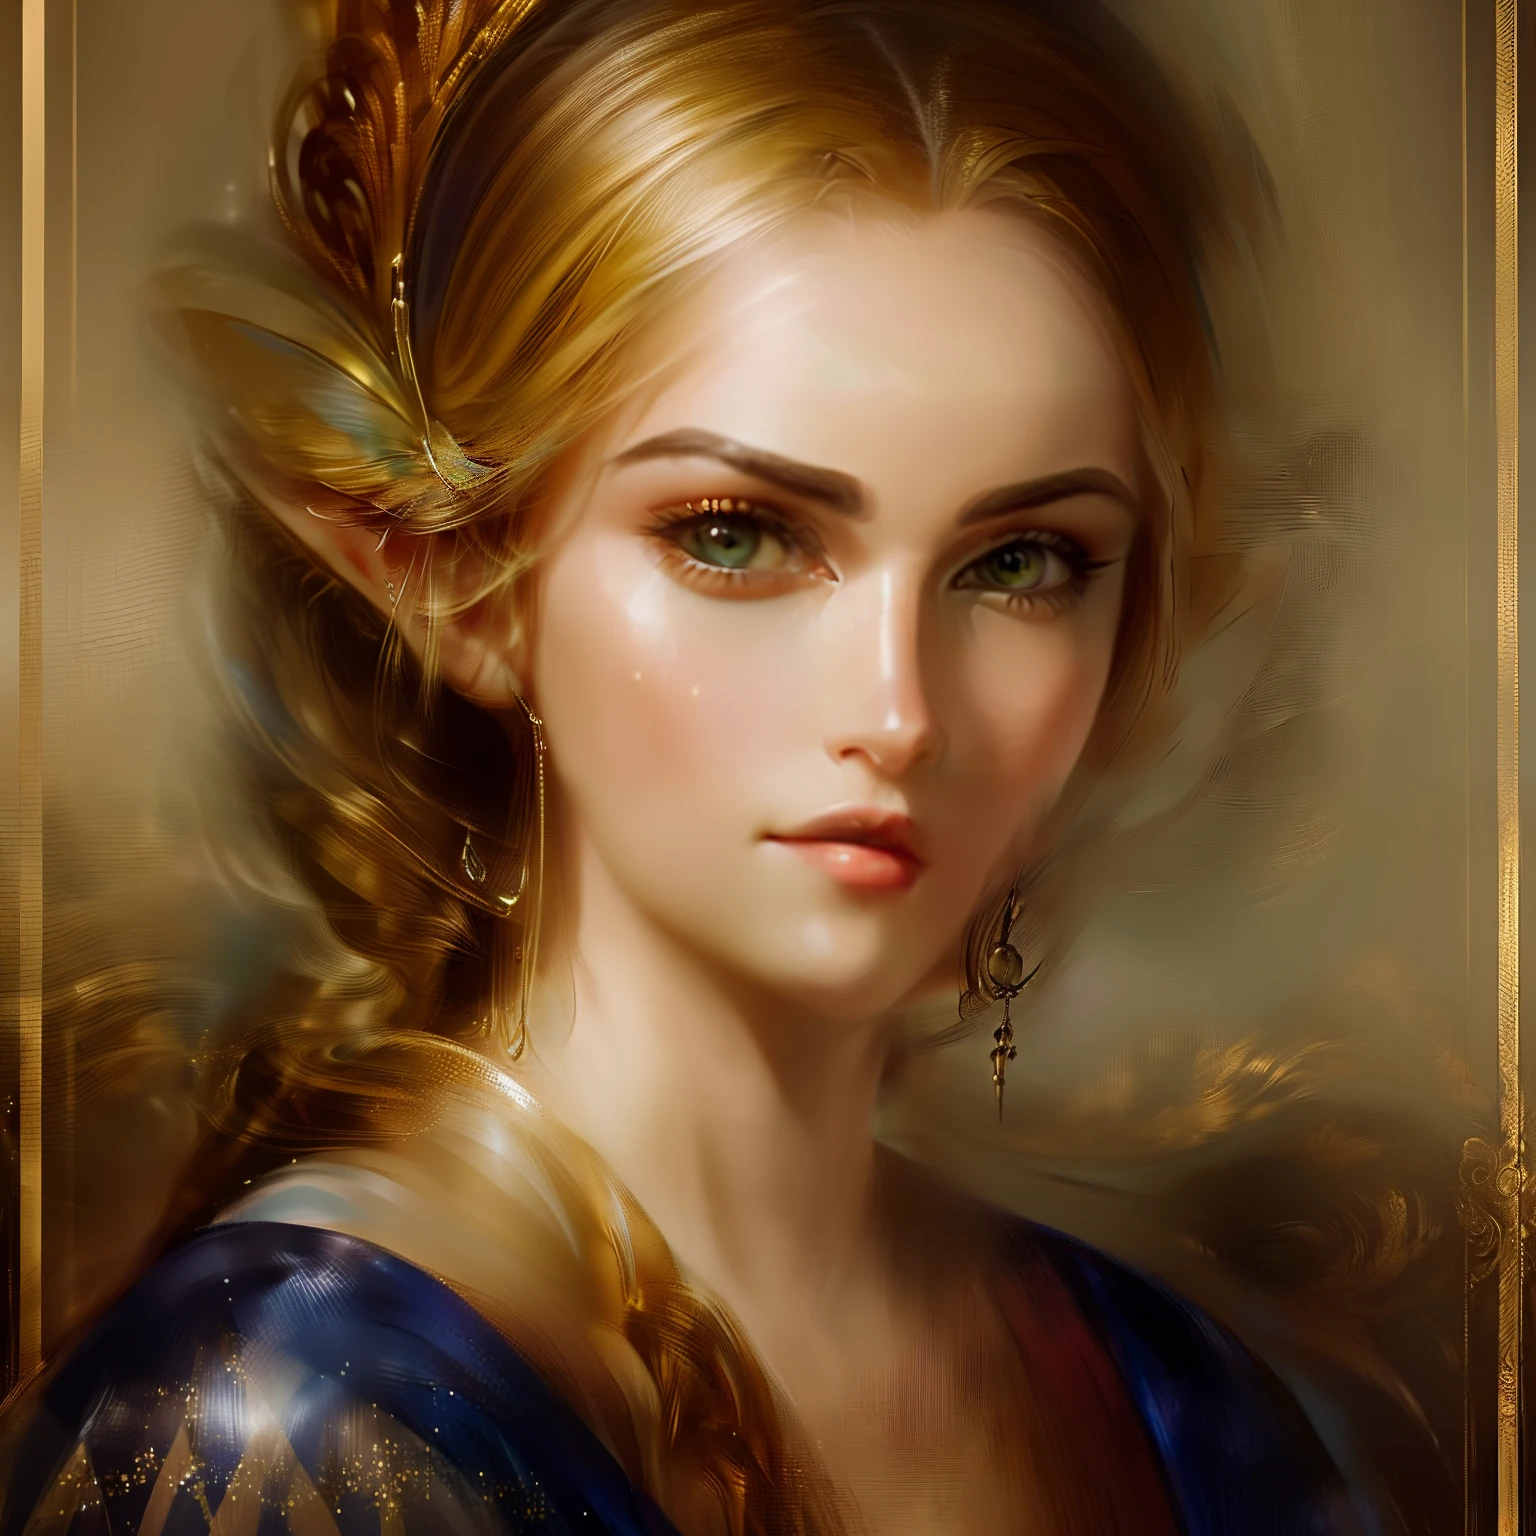 (partie maîtresse, haute résolution:1.3), cheveux blancs,(Portrait en studio d&#39;une femme céleste de princesse elfique celtique aux cheveux rouges de profil:1.2), (ses yeux d&#39;un bleu profond rayonnant d&#39;une lueur puissante:1.1), (Appareil photo Nikon Z7 II, parfait pour capturer des détails complexes:1.2), (associé au Nikon NIKKOR Z 85mm f/1.Lent 8 s:1.2), (La peau impeccable du gobelin dégageant un sentiment de beauté éthérée:1.1), (ses longs cheveux argentés tombant gracieusement en cascade:1.1), (Un lisse, expression douce ornant son visage:1.1), (Le focus sur le profil charmant de la femme elfique:1.1), (le fond du studio un noir captivant, Mettre l’accent sur votre présence:1.1), (Le lutin paré de bijoux délicats et élégants:1.1), (un costume en laine noire lui serrant le cou:1.1), (le portrait qui capture son allure mystérieuse et son élégance:1.1), (Un moment de grâce et de beauté tranquille:1.1), (ses yeux uniques et captivants entraînent les spectateurs au plus profond de son âme:1.1), (Un portrait intemporel d&#39;un être mythique en studio:1.1), (le jeu subtil d&#39;ombre et de lumière accentuant ses traits:1.1), (une parfaite harmonie de mystique et d&#39;élégance:1.1), (la femme elfique incarnant une beauté intemporelle:1.1), (une image qui transporte le spectateur dans un royaume de fantaisie et d&#39;émerveillement:1.1), (l&#39;éclairage impeccable du studio mettant en valeur chaque détail de celui-ci:1.1), (une représentation captivante et sereine d&#39;une créature éthérée:1.1), (un moment capturé dans le temps, Où le fantasme rencontre la réalité:1.1), (le décor du studio ajoutant une impression d&#39;intemporalité au portrait:1.1), (un portrait d&#39;une femme elfique qui séduit par sa charmante présence:1.1), (la combinaison de ses yeux brillants et de son expression douce créant une atmosphère surnaturelle:1.1), (Un portrait en studio qui montre la beauté et la fascination des êtres mythiques:1.1)